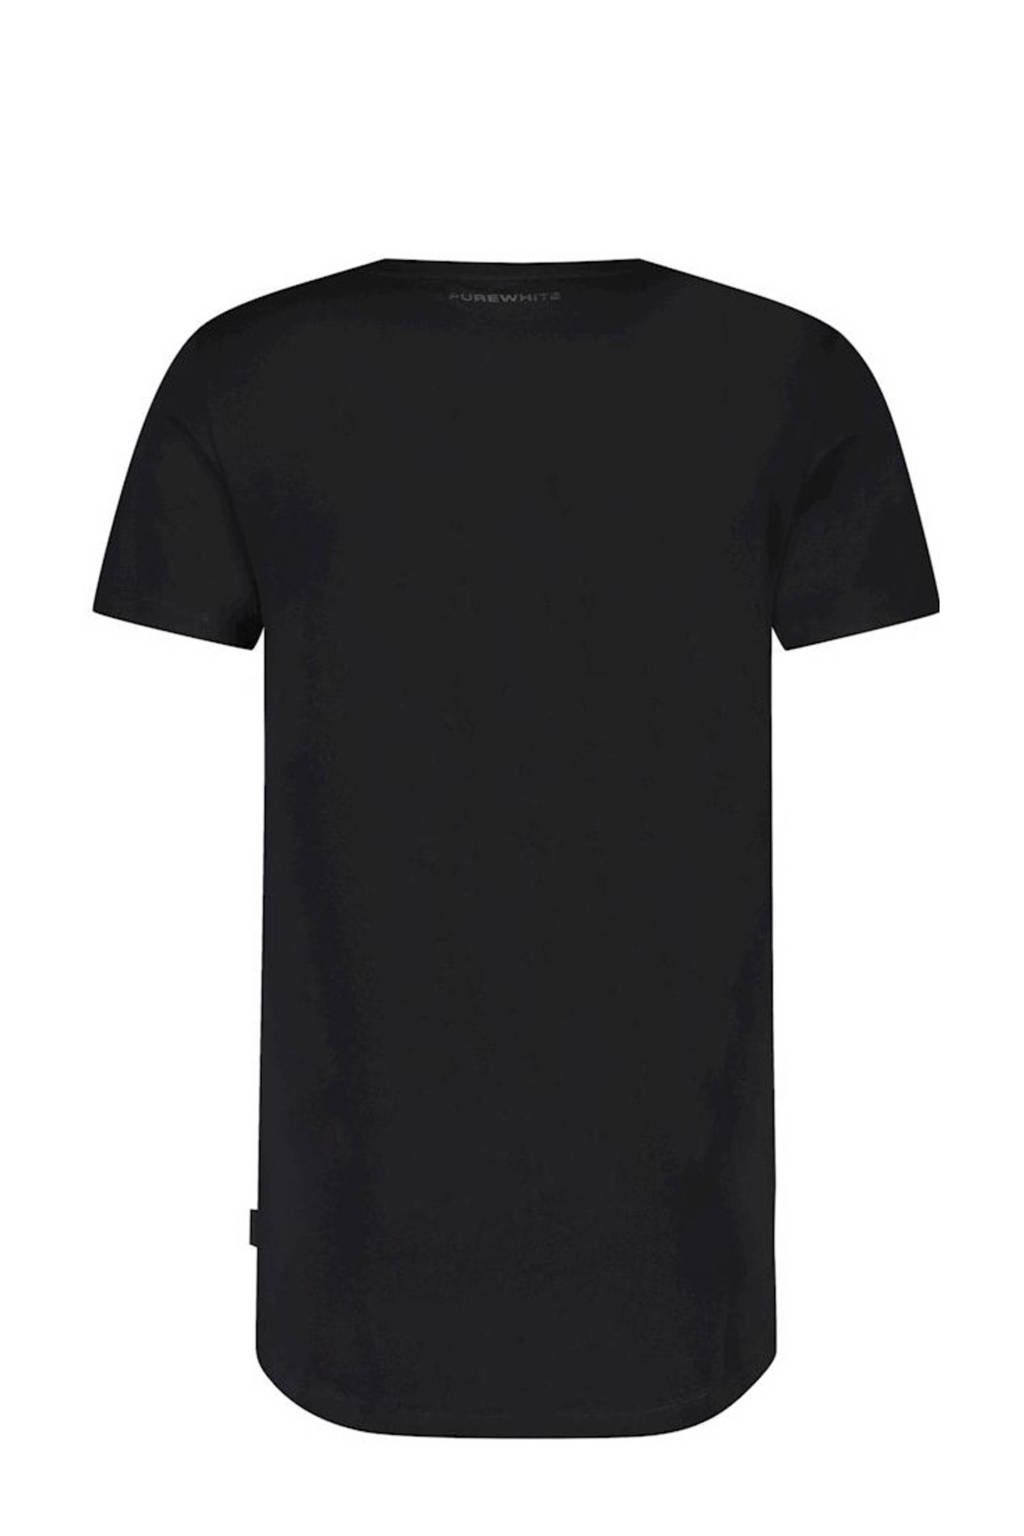 Purewhite basic T-shirt black